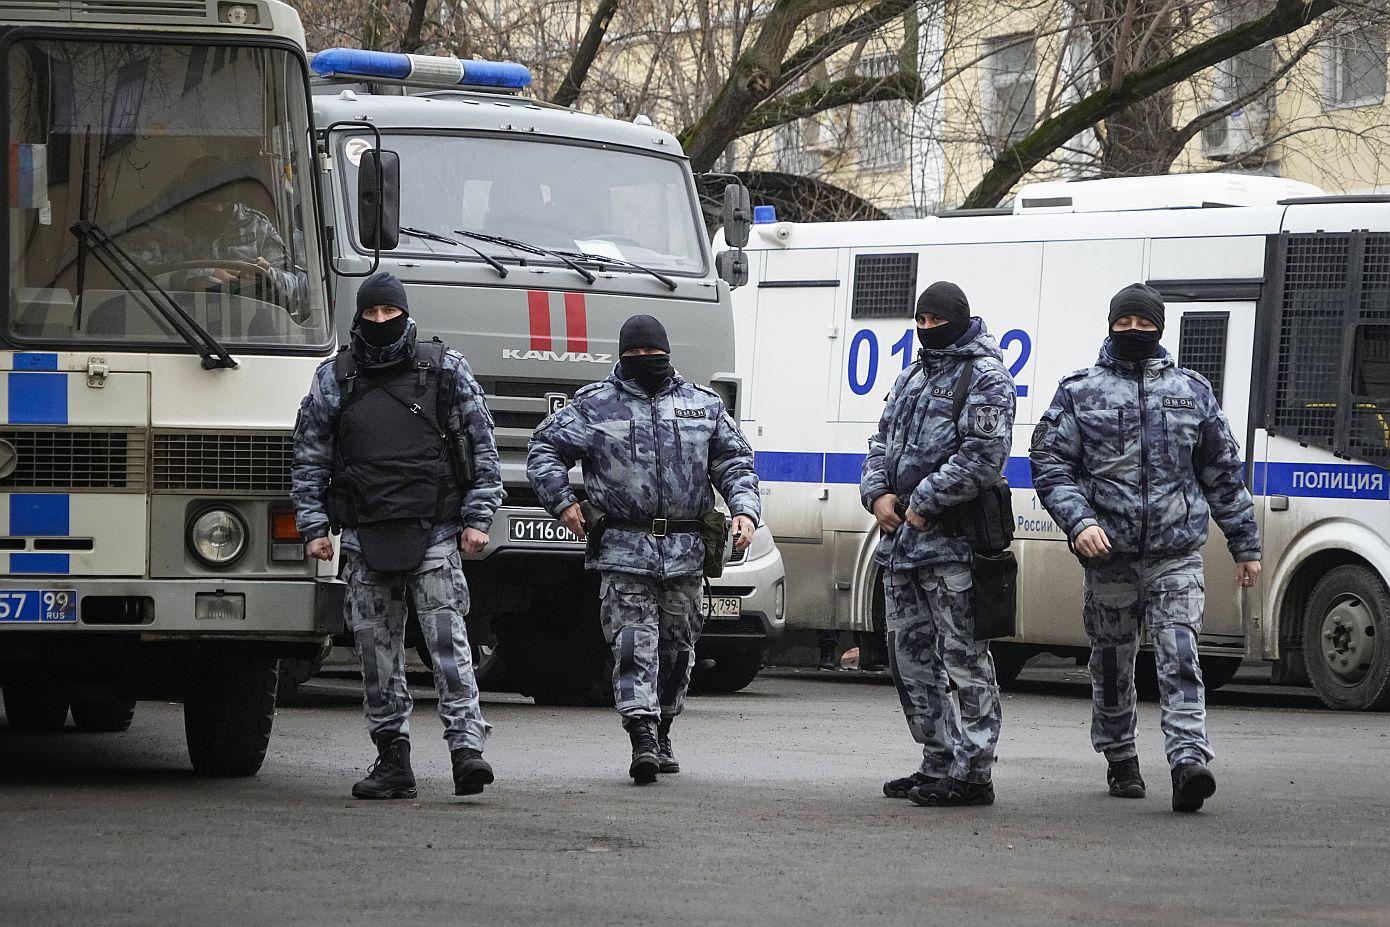 Μόσχα: Εκκένωση εμπορικών κέντρων μετά από απειλές για βόμβες